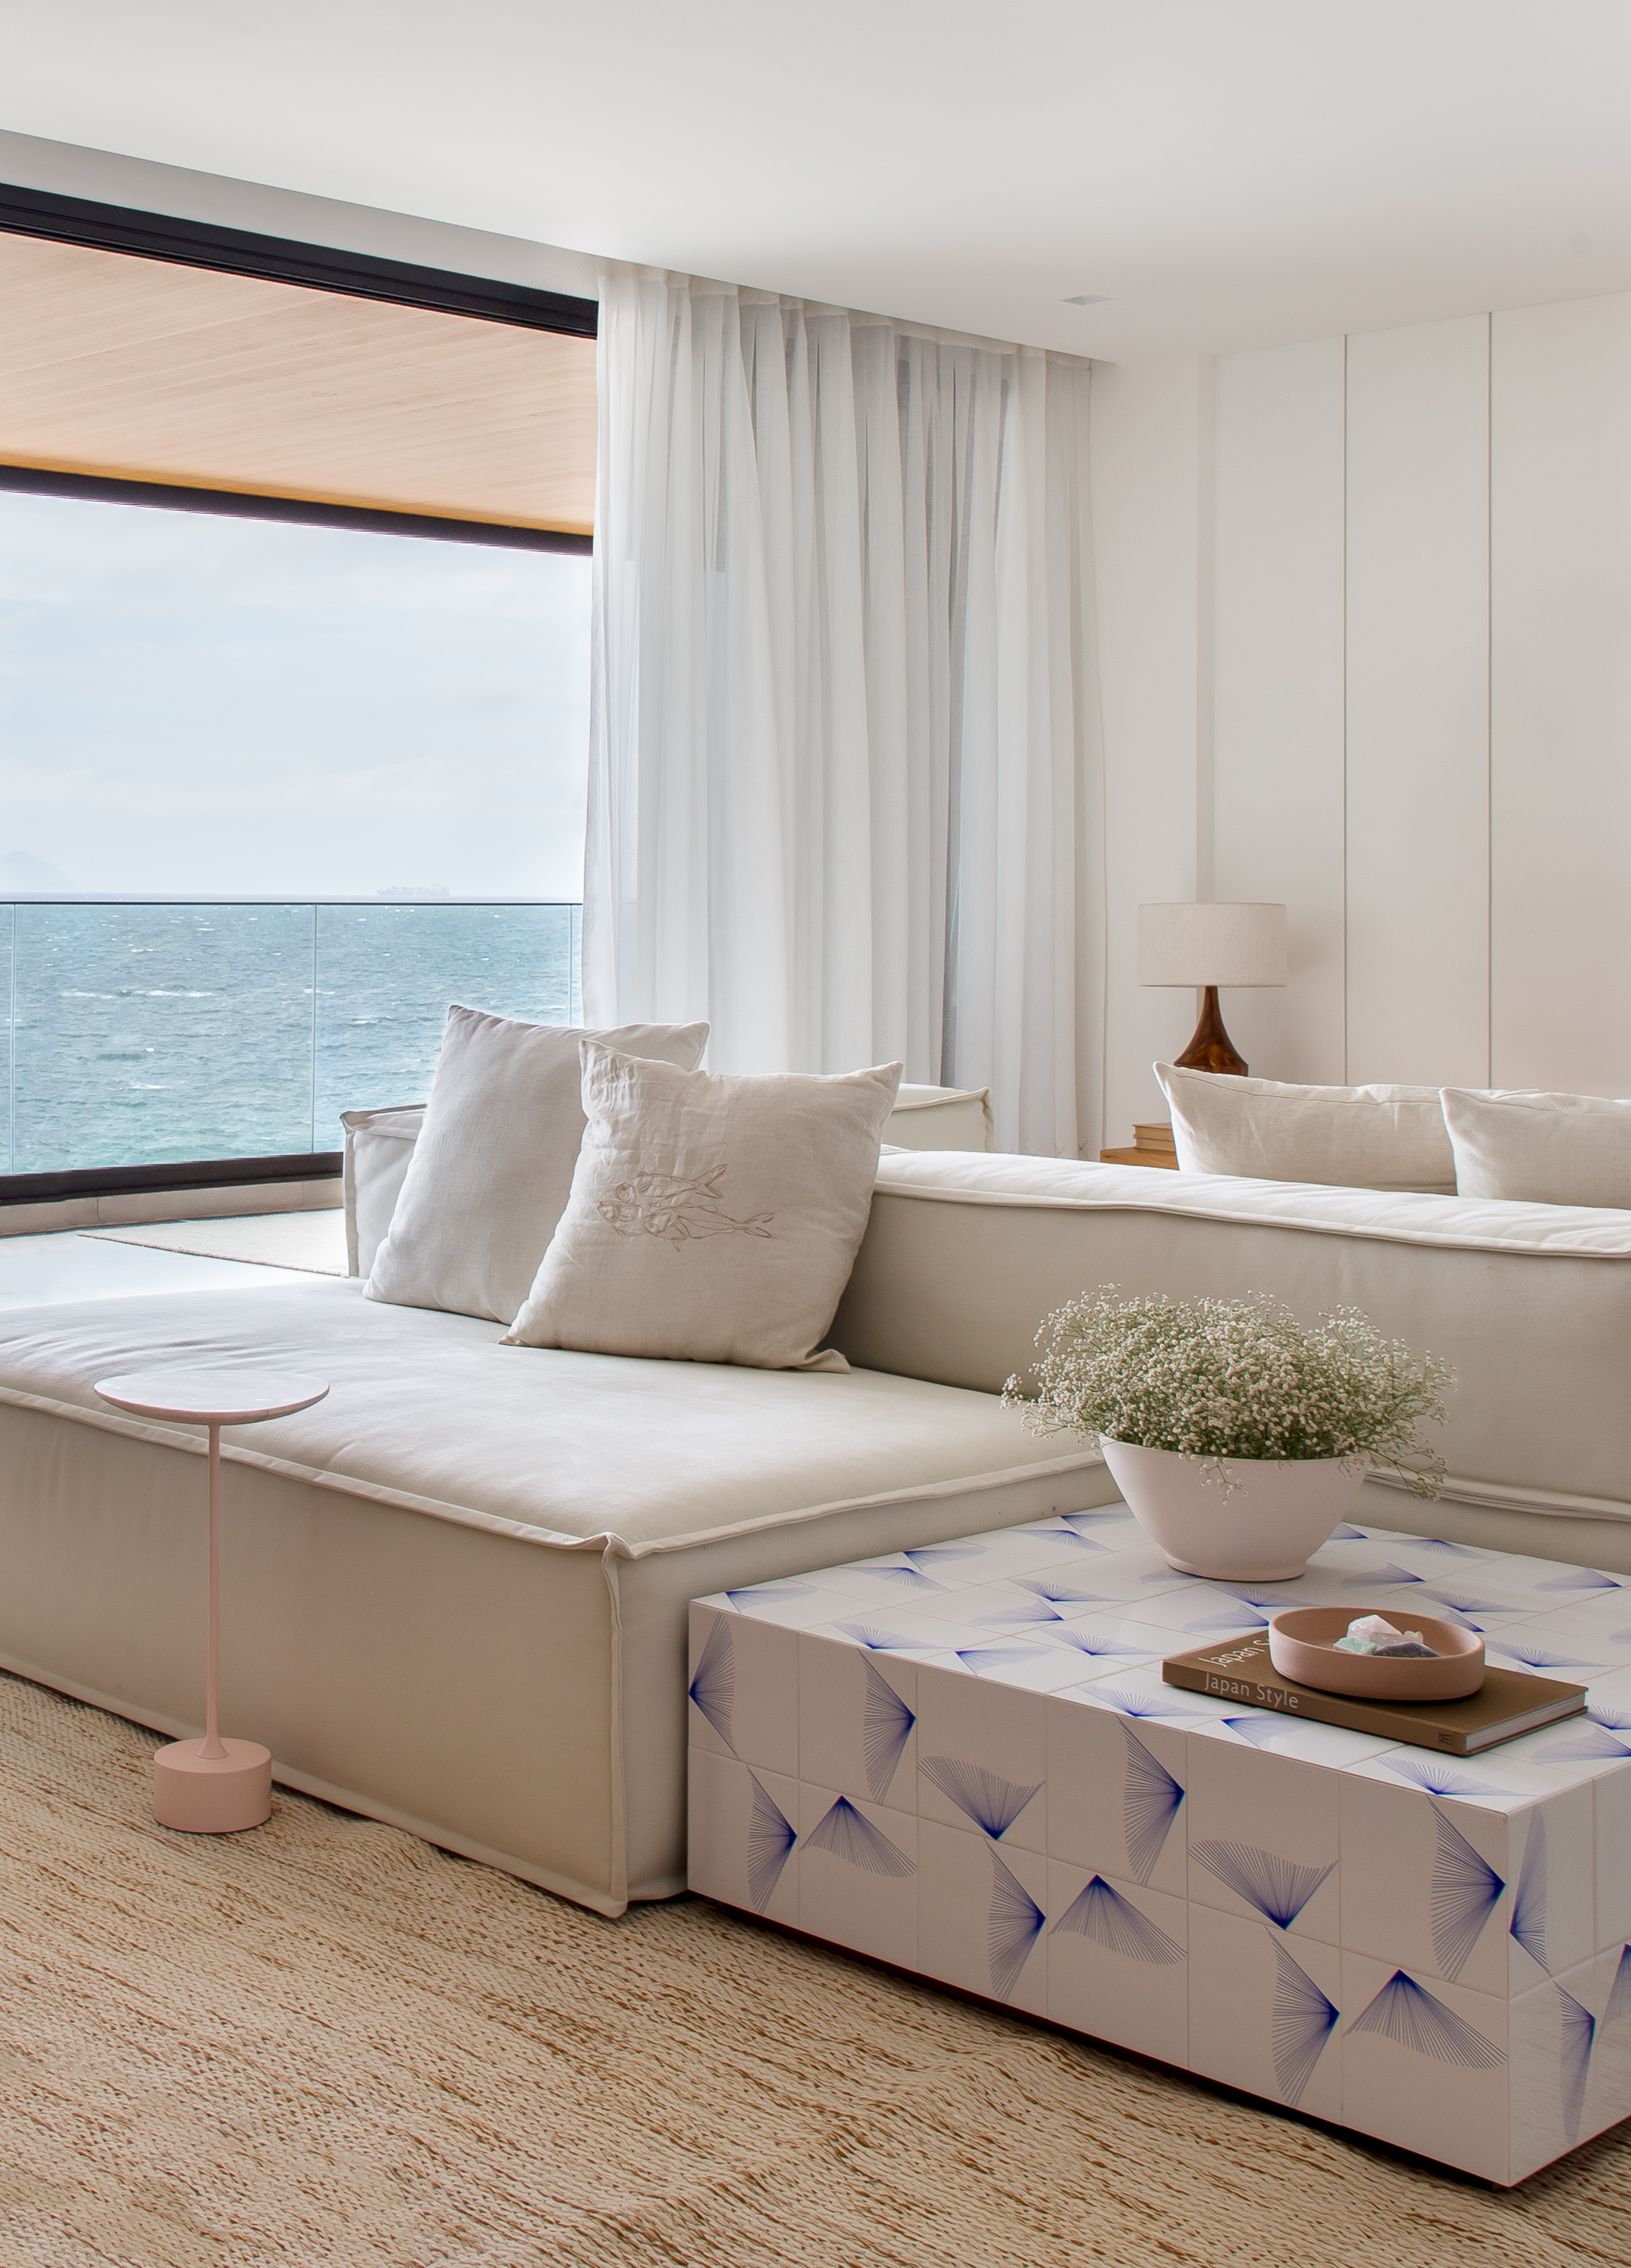 Décor essencial com branco e madeira peroba valoriza o mar neste apê. Projeto de PKB Arquitetura. Na foto, sala de estar, sofá branco ilha, mesa de centro com azulejos.